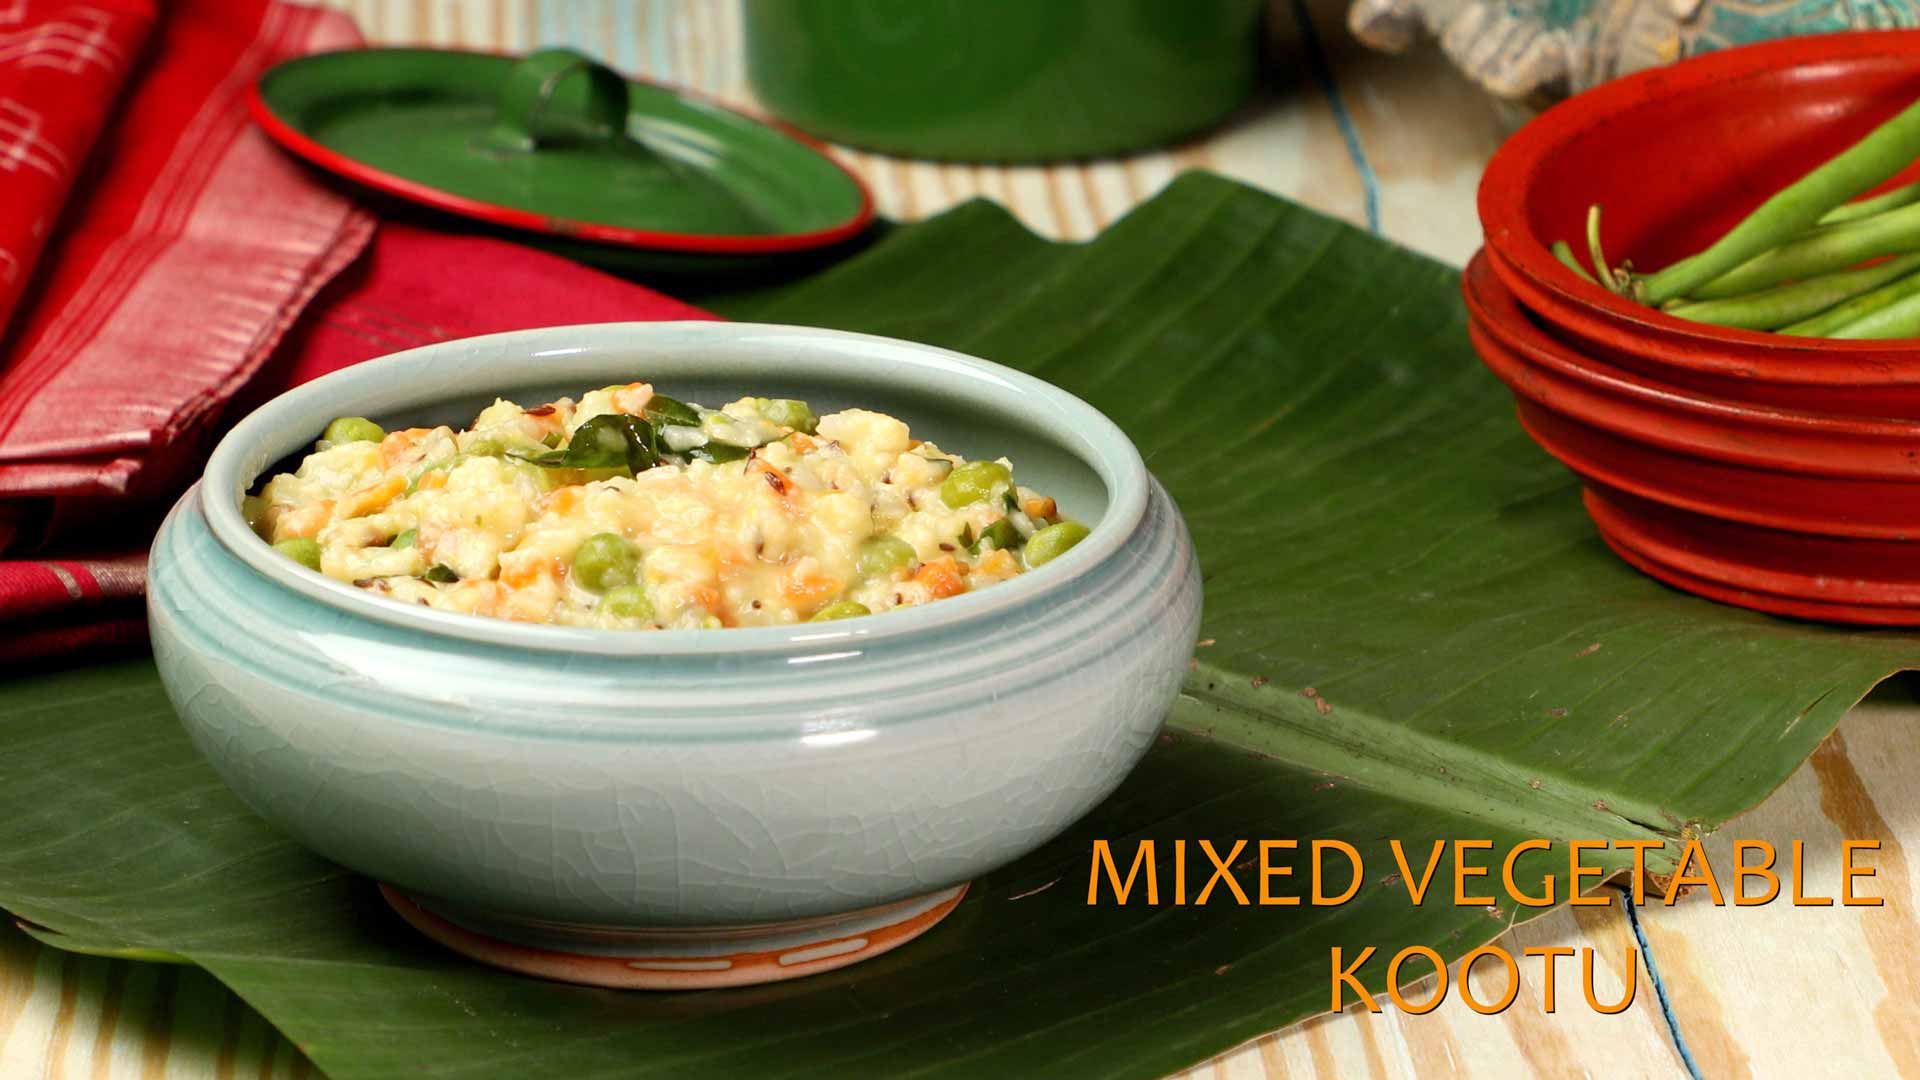 Mixed Vegetable Kootu Recipe | Easy Vegetarian